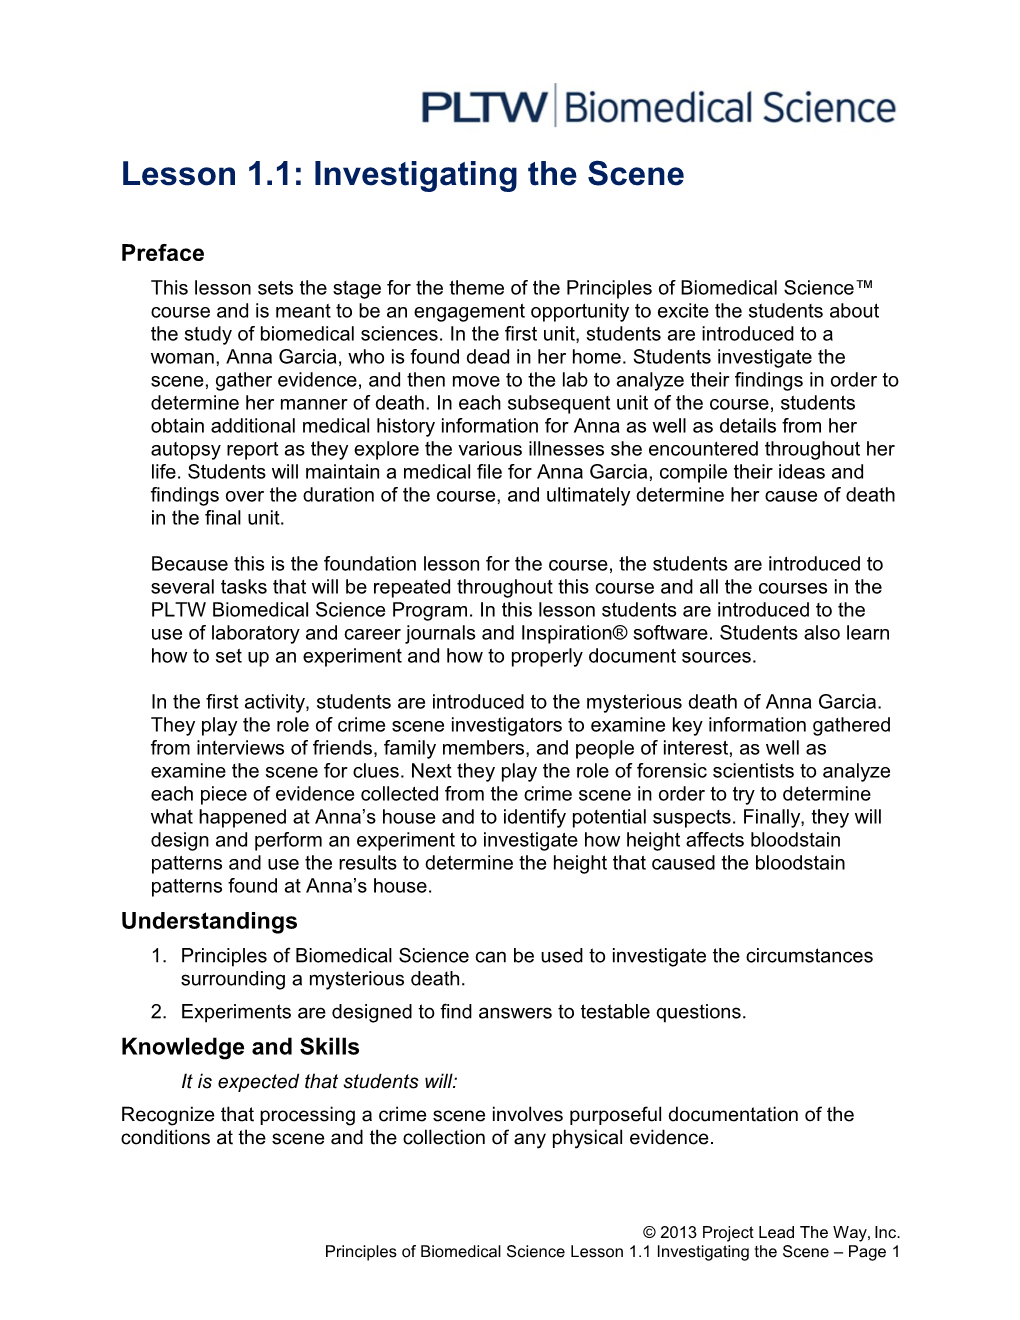 Lesson 1.1: Investigating the Scene